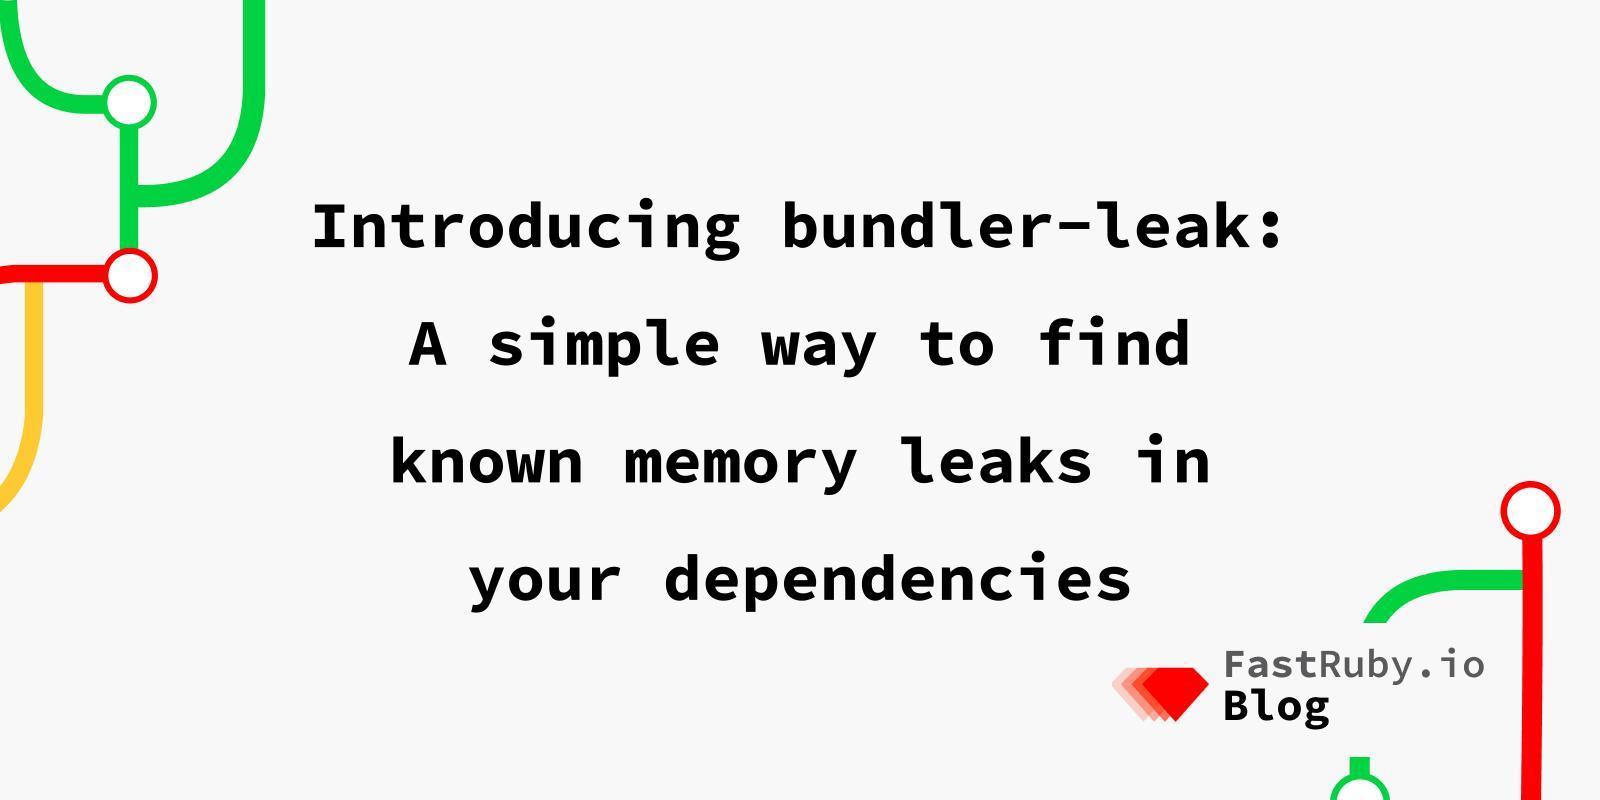 Introducing bundler-leak: A simple way to find known memory leaks in your dependencies